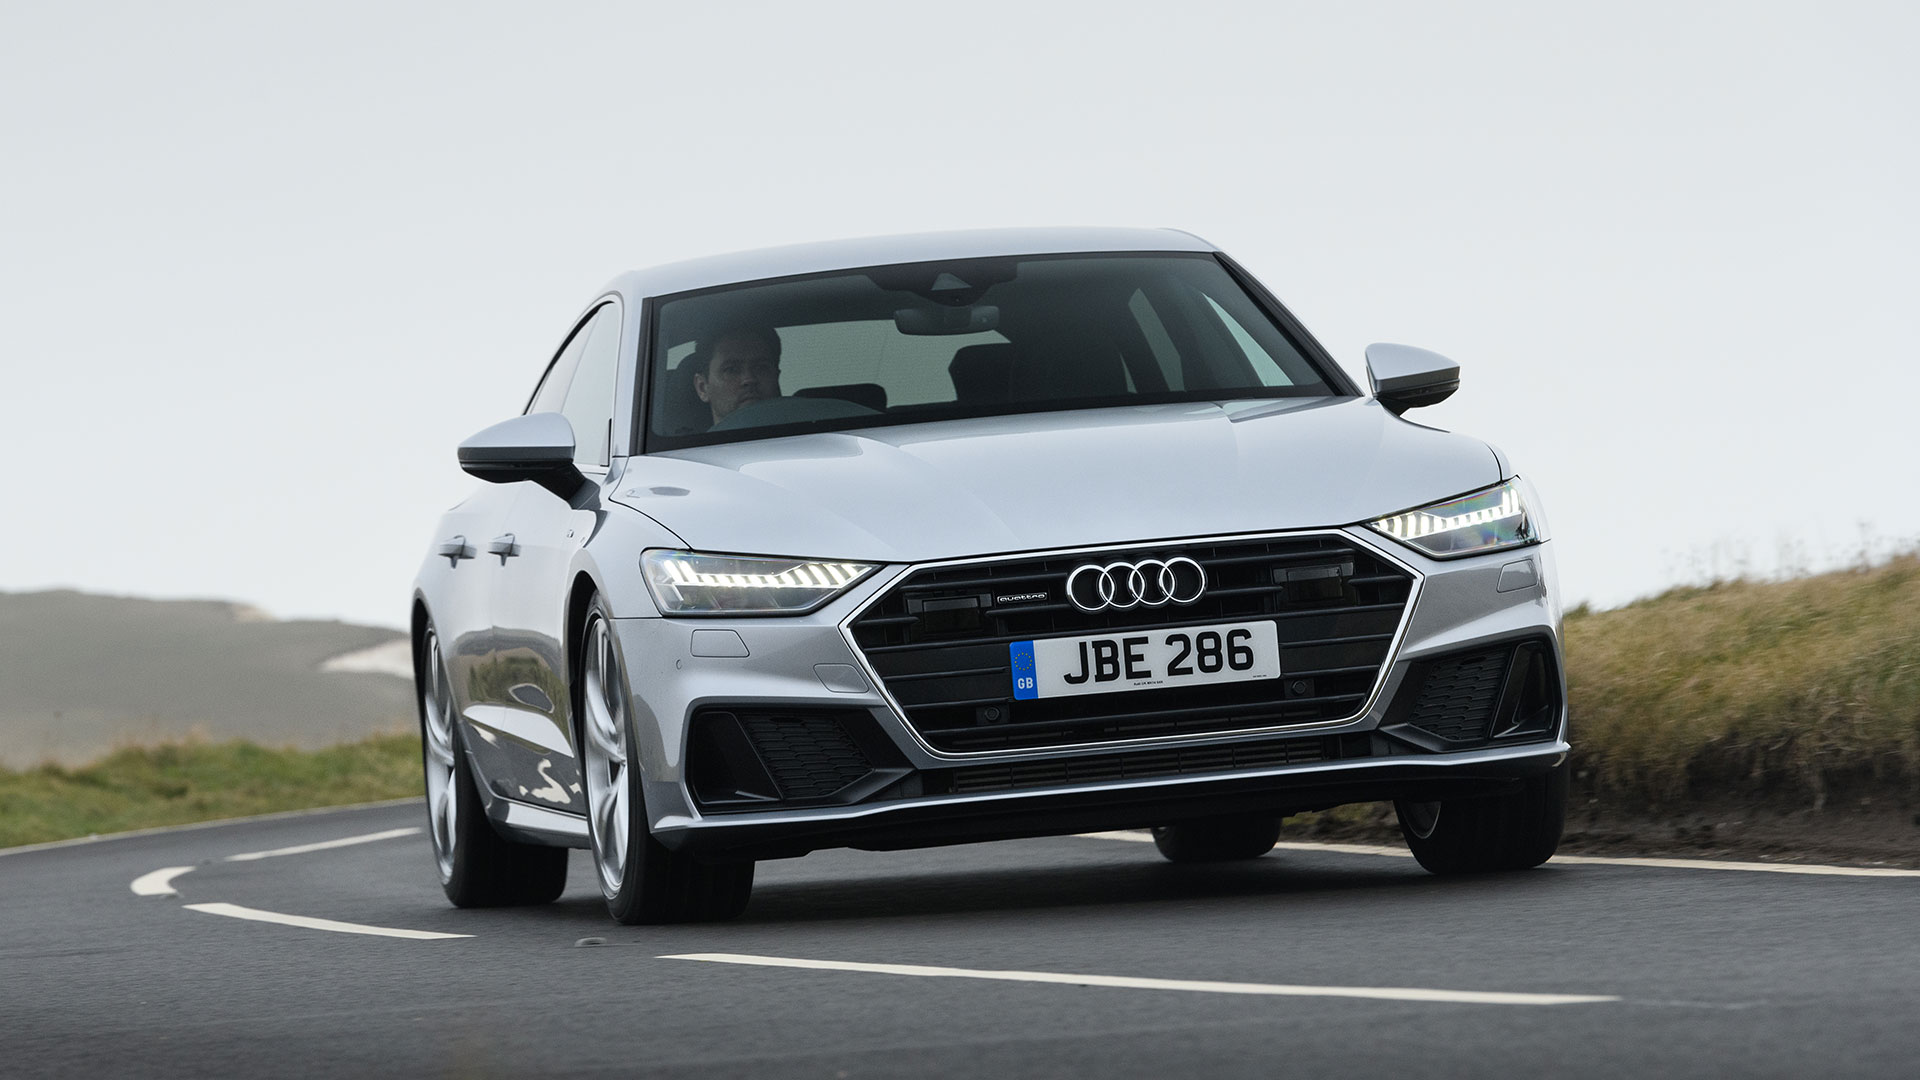 Audi A7 Cars For Sale | AutoTrader UK